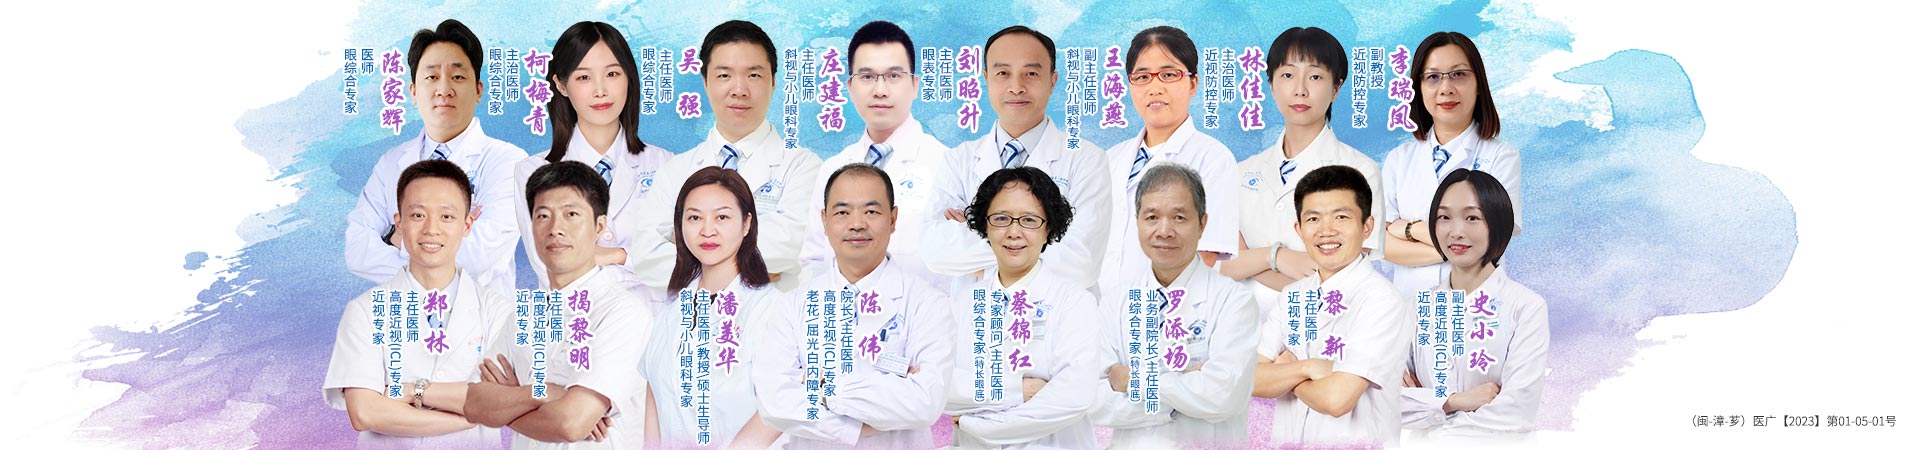 漳州眼科医院专家团队